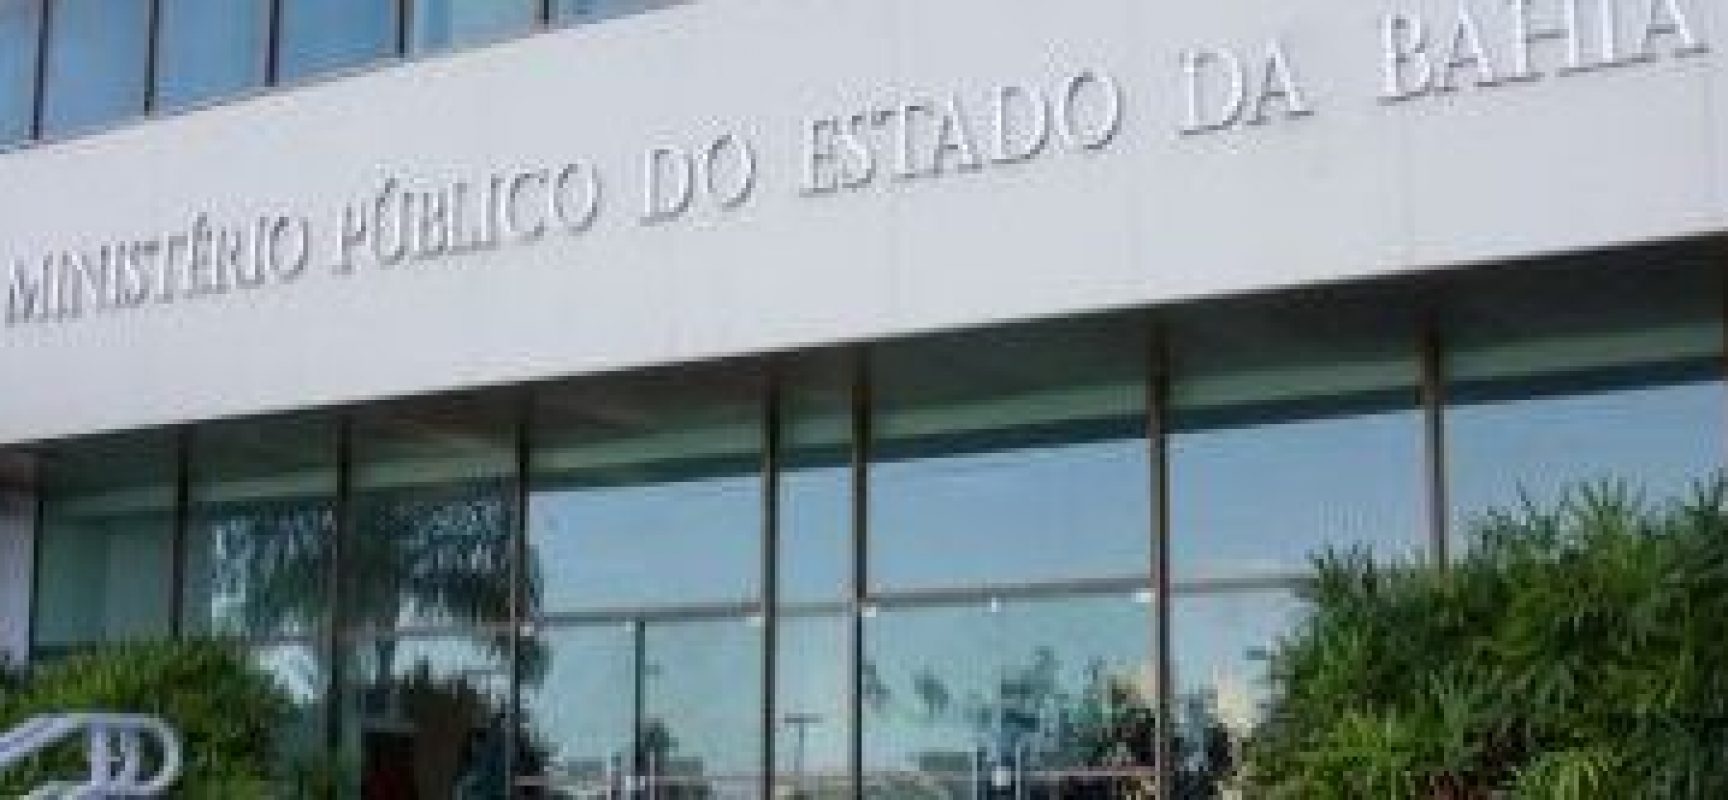 O que você acha da atuação do MPF na Bahia? Responda a consulta pública virtual até 15 de junho